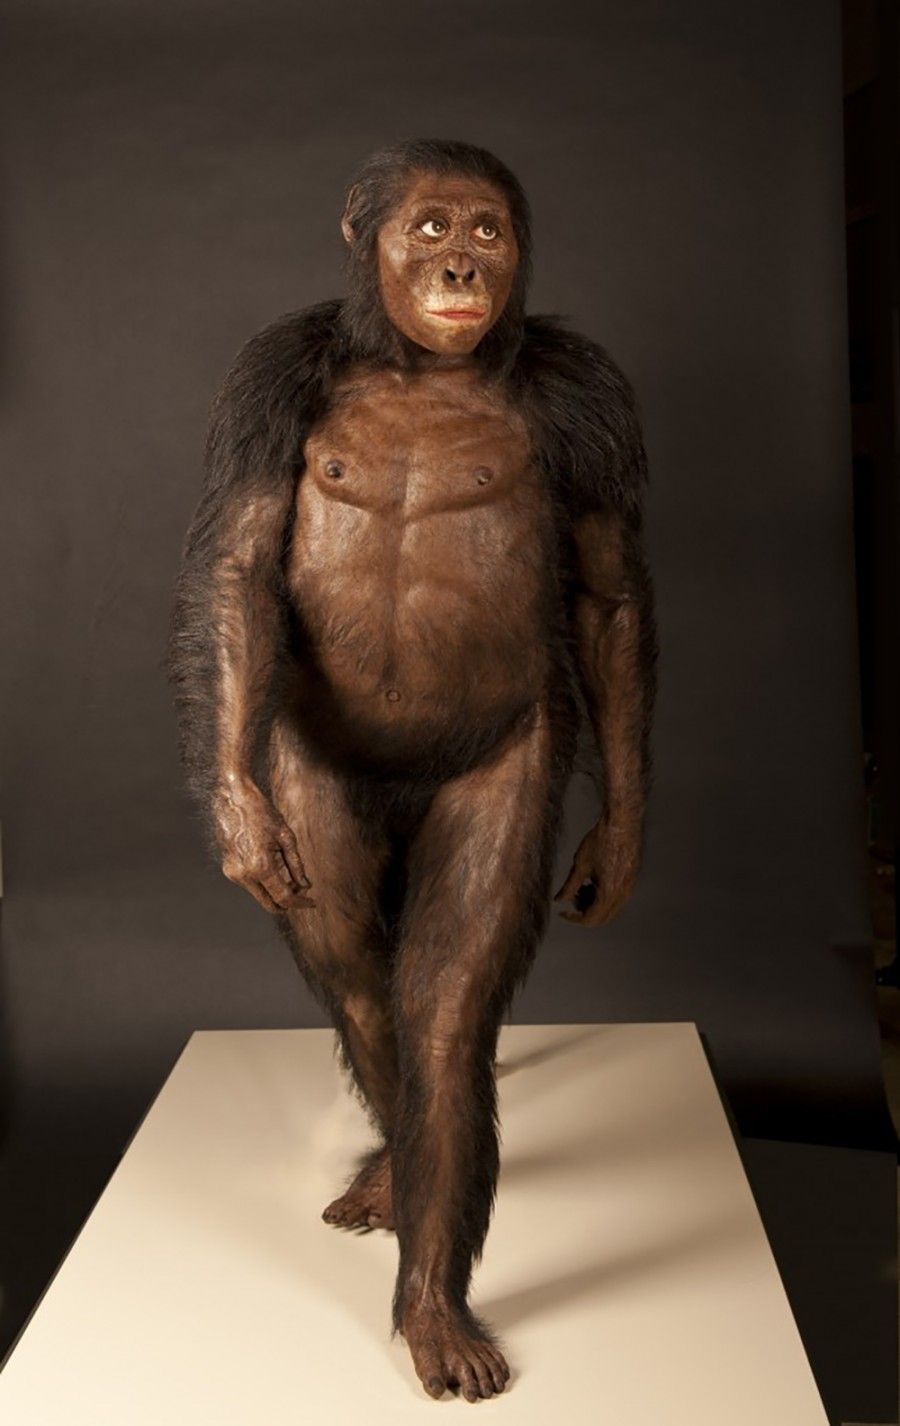 John Gurche tarafından yapılmış bir Lucy (Australopithecus afarensis) rekonstrüksiyonu